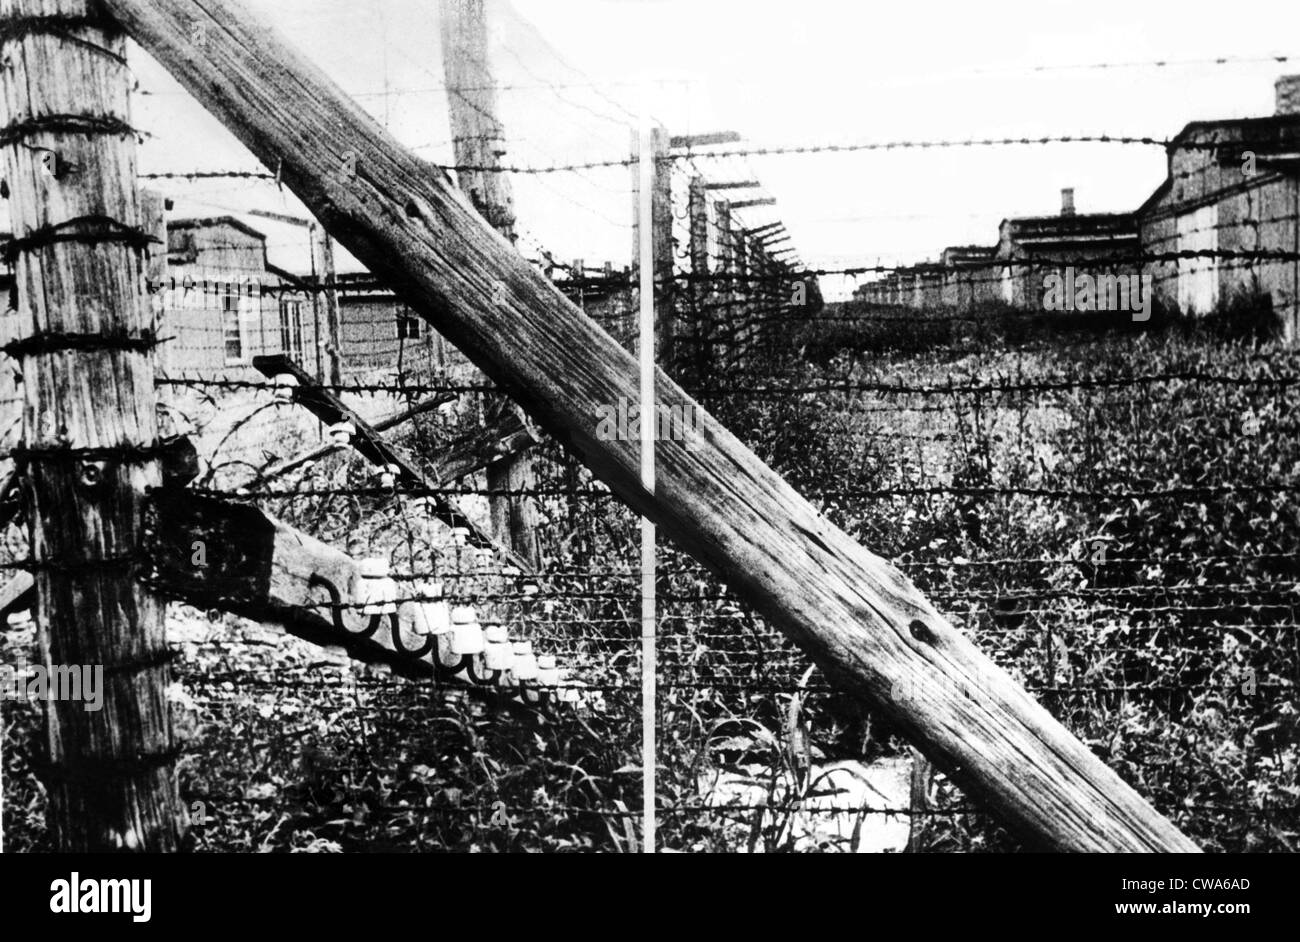 Il filo spinato che circonda la caserma in un campo di concentramento in Lublin, Polonia, 1944. La cortesia: Archivi CSU/Everett Collection Foto Stock